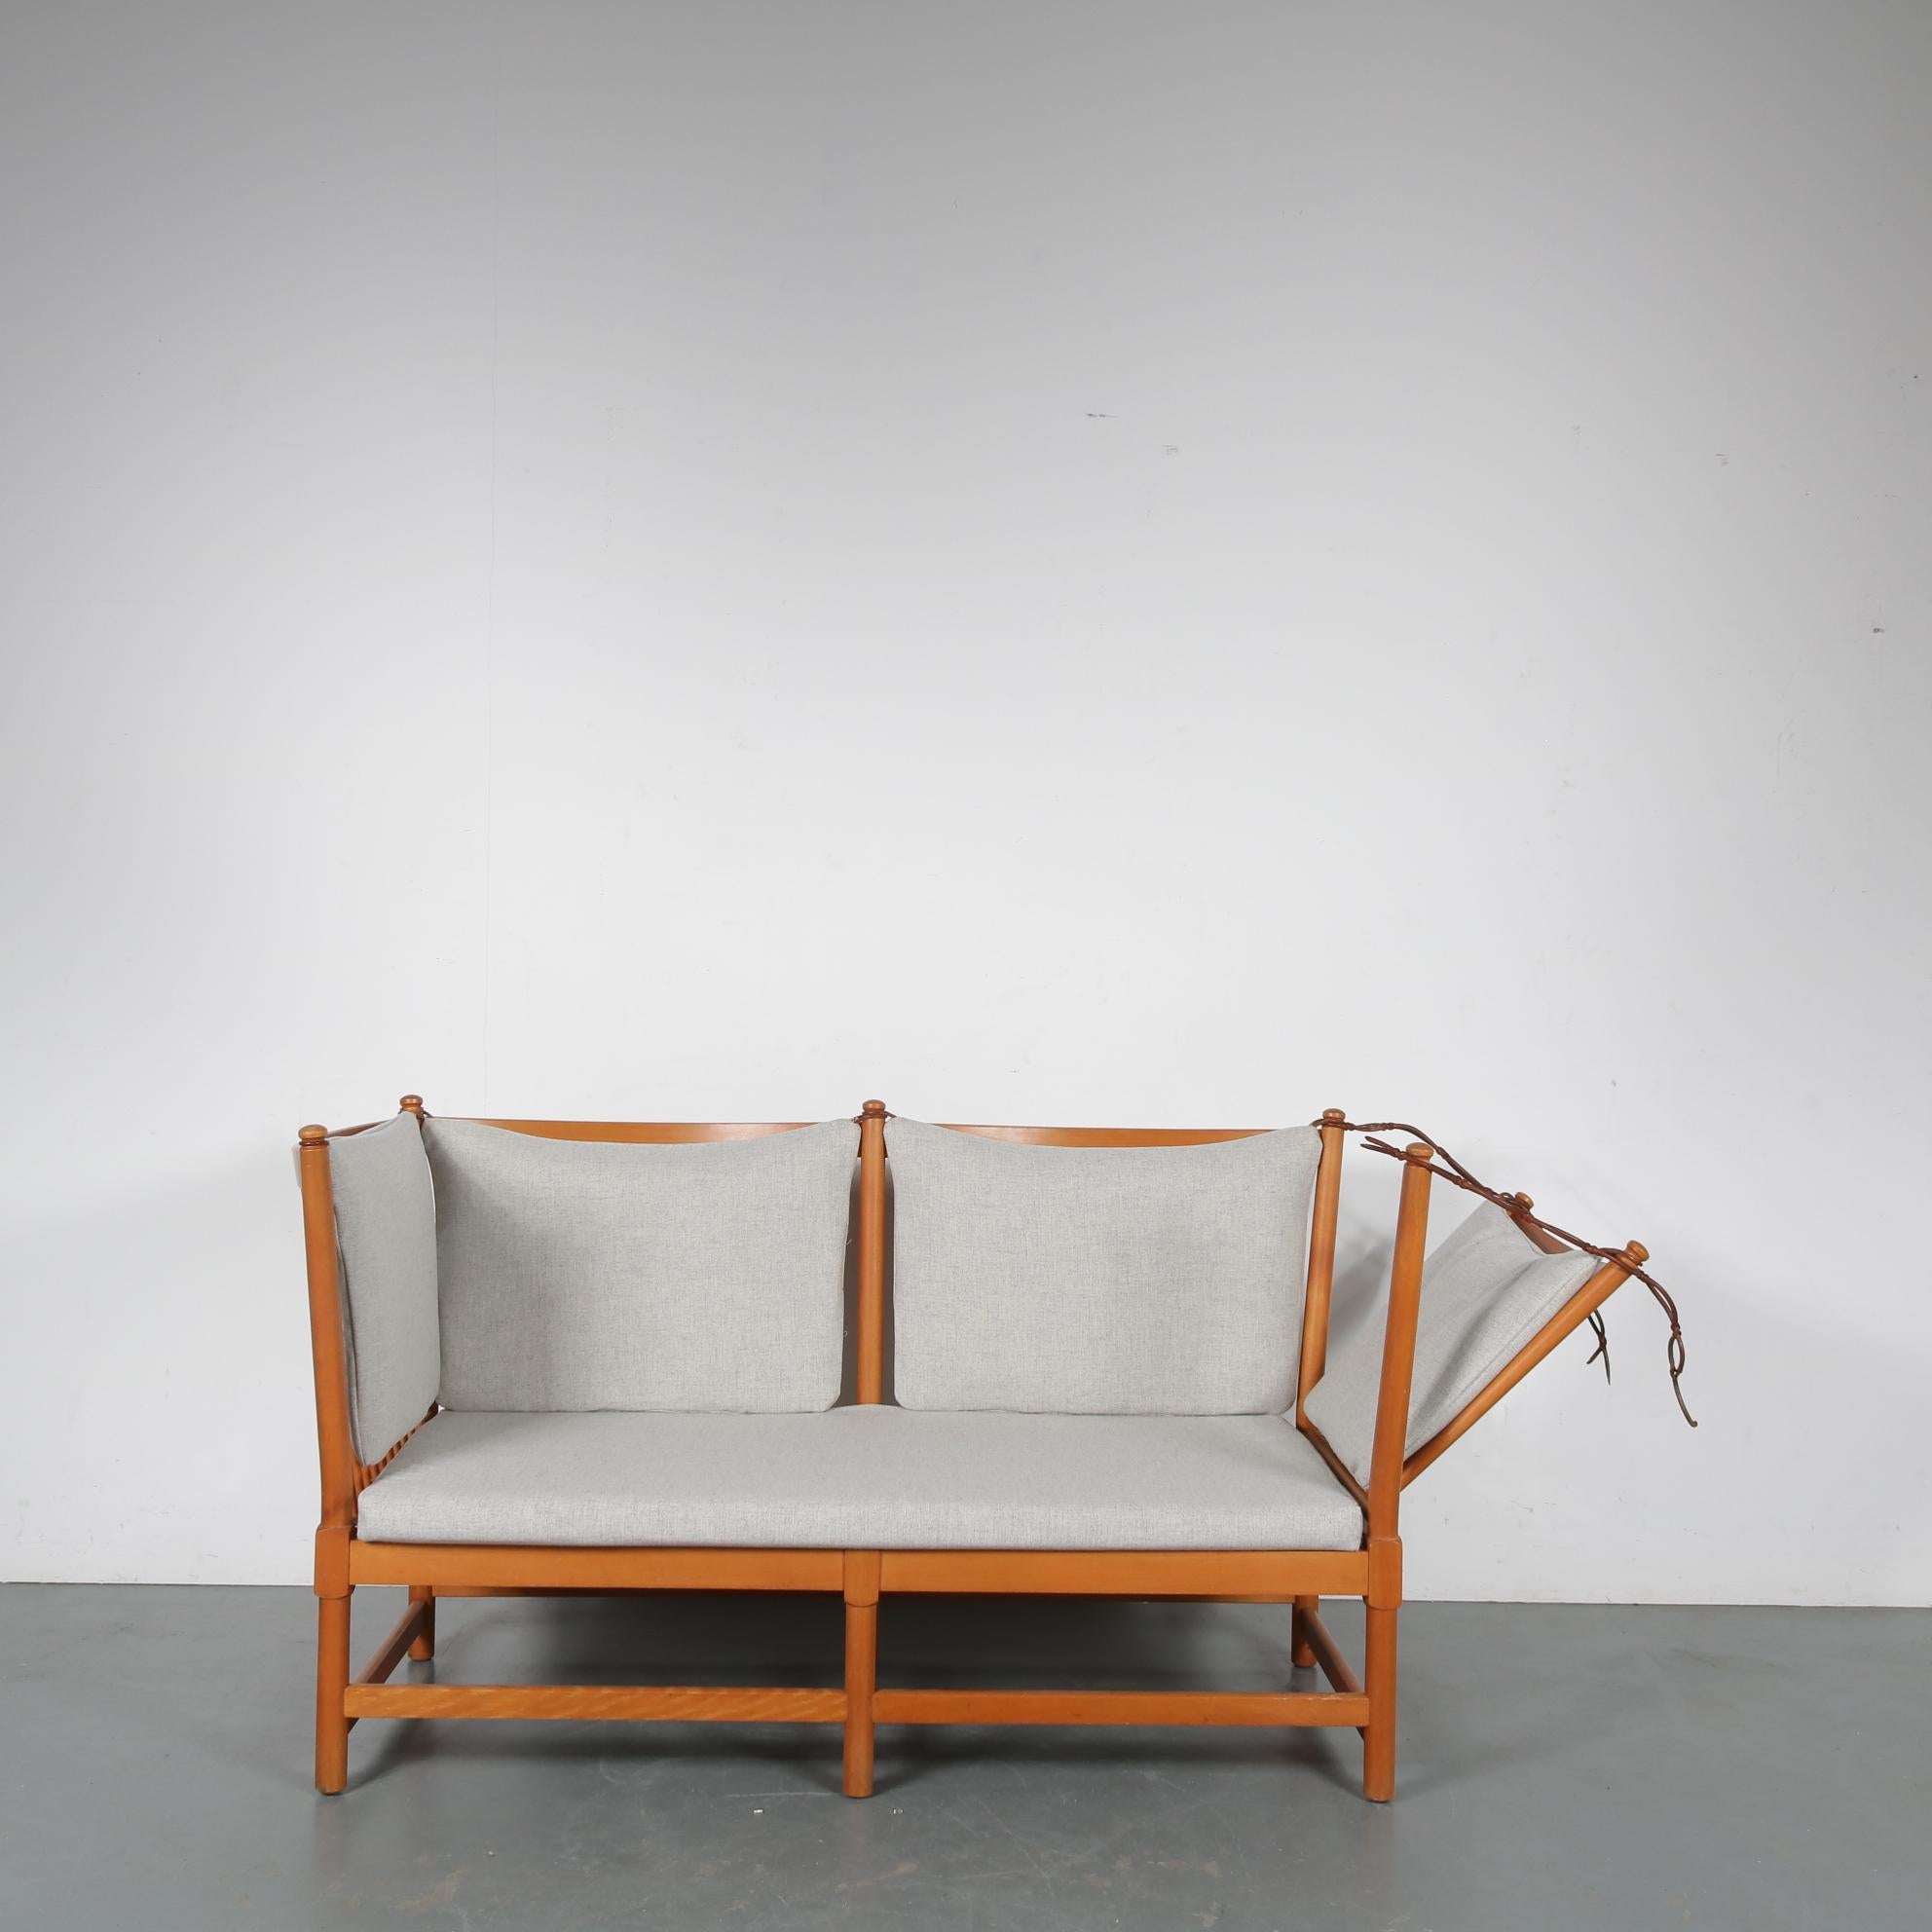 Magnifique canapé spokeback conçu par Børge Mogensen, fabriqué par Fritz Hansen au Danemark, 1963.

Cette pièce est faite de bois de hêtre de haute qualité et est nouvellement tapissée de tissu Kvadrat gris clair. Le canapé a un design très